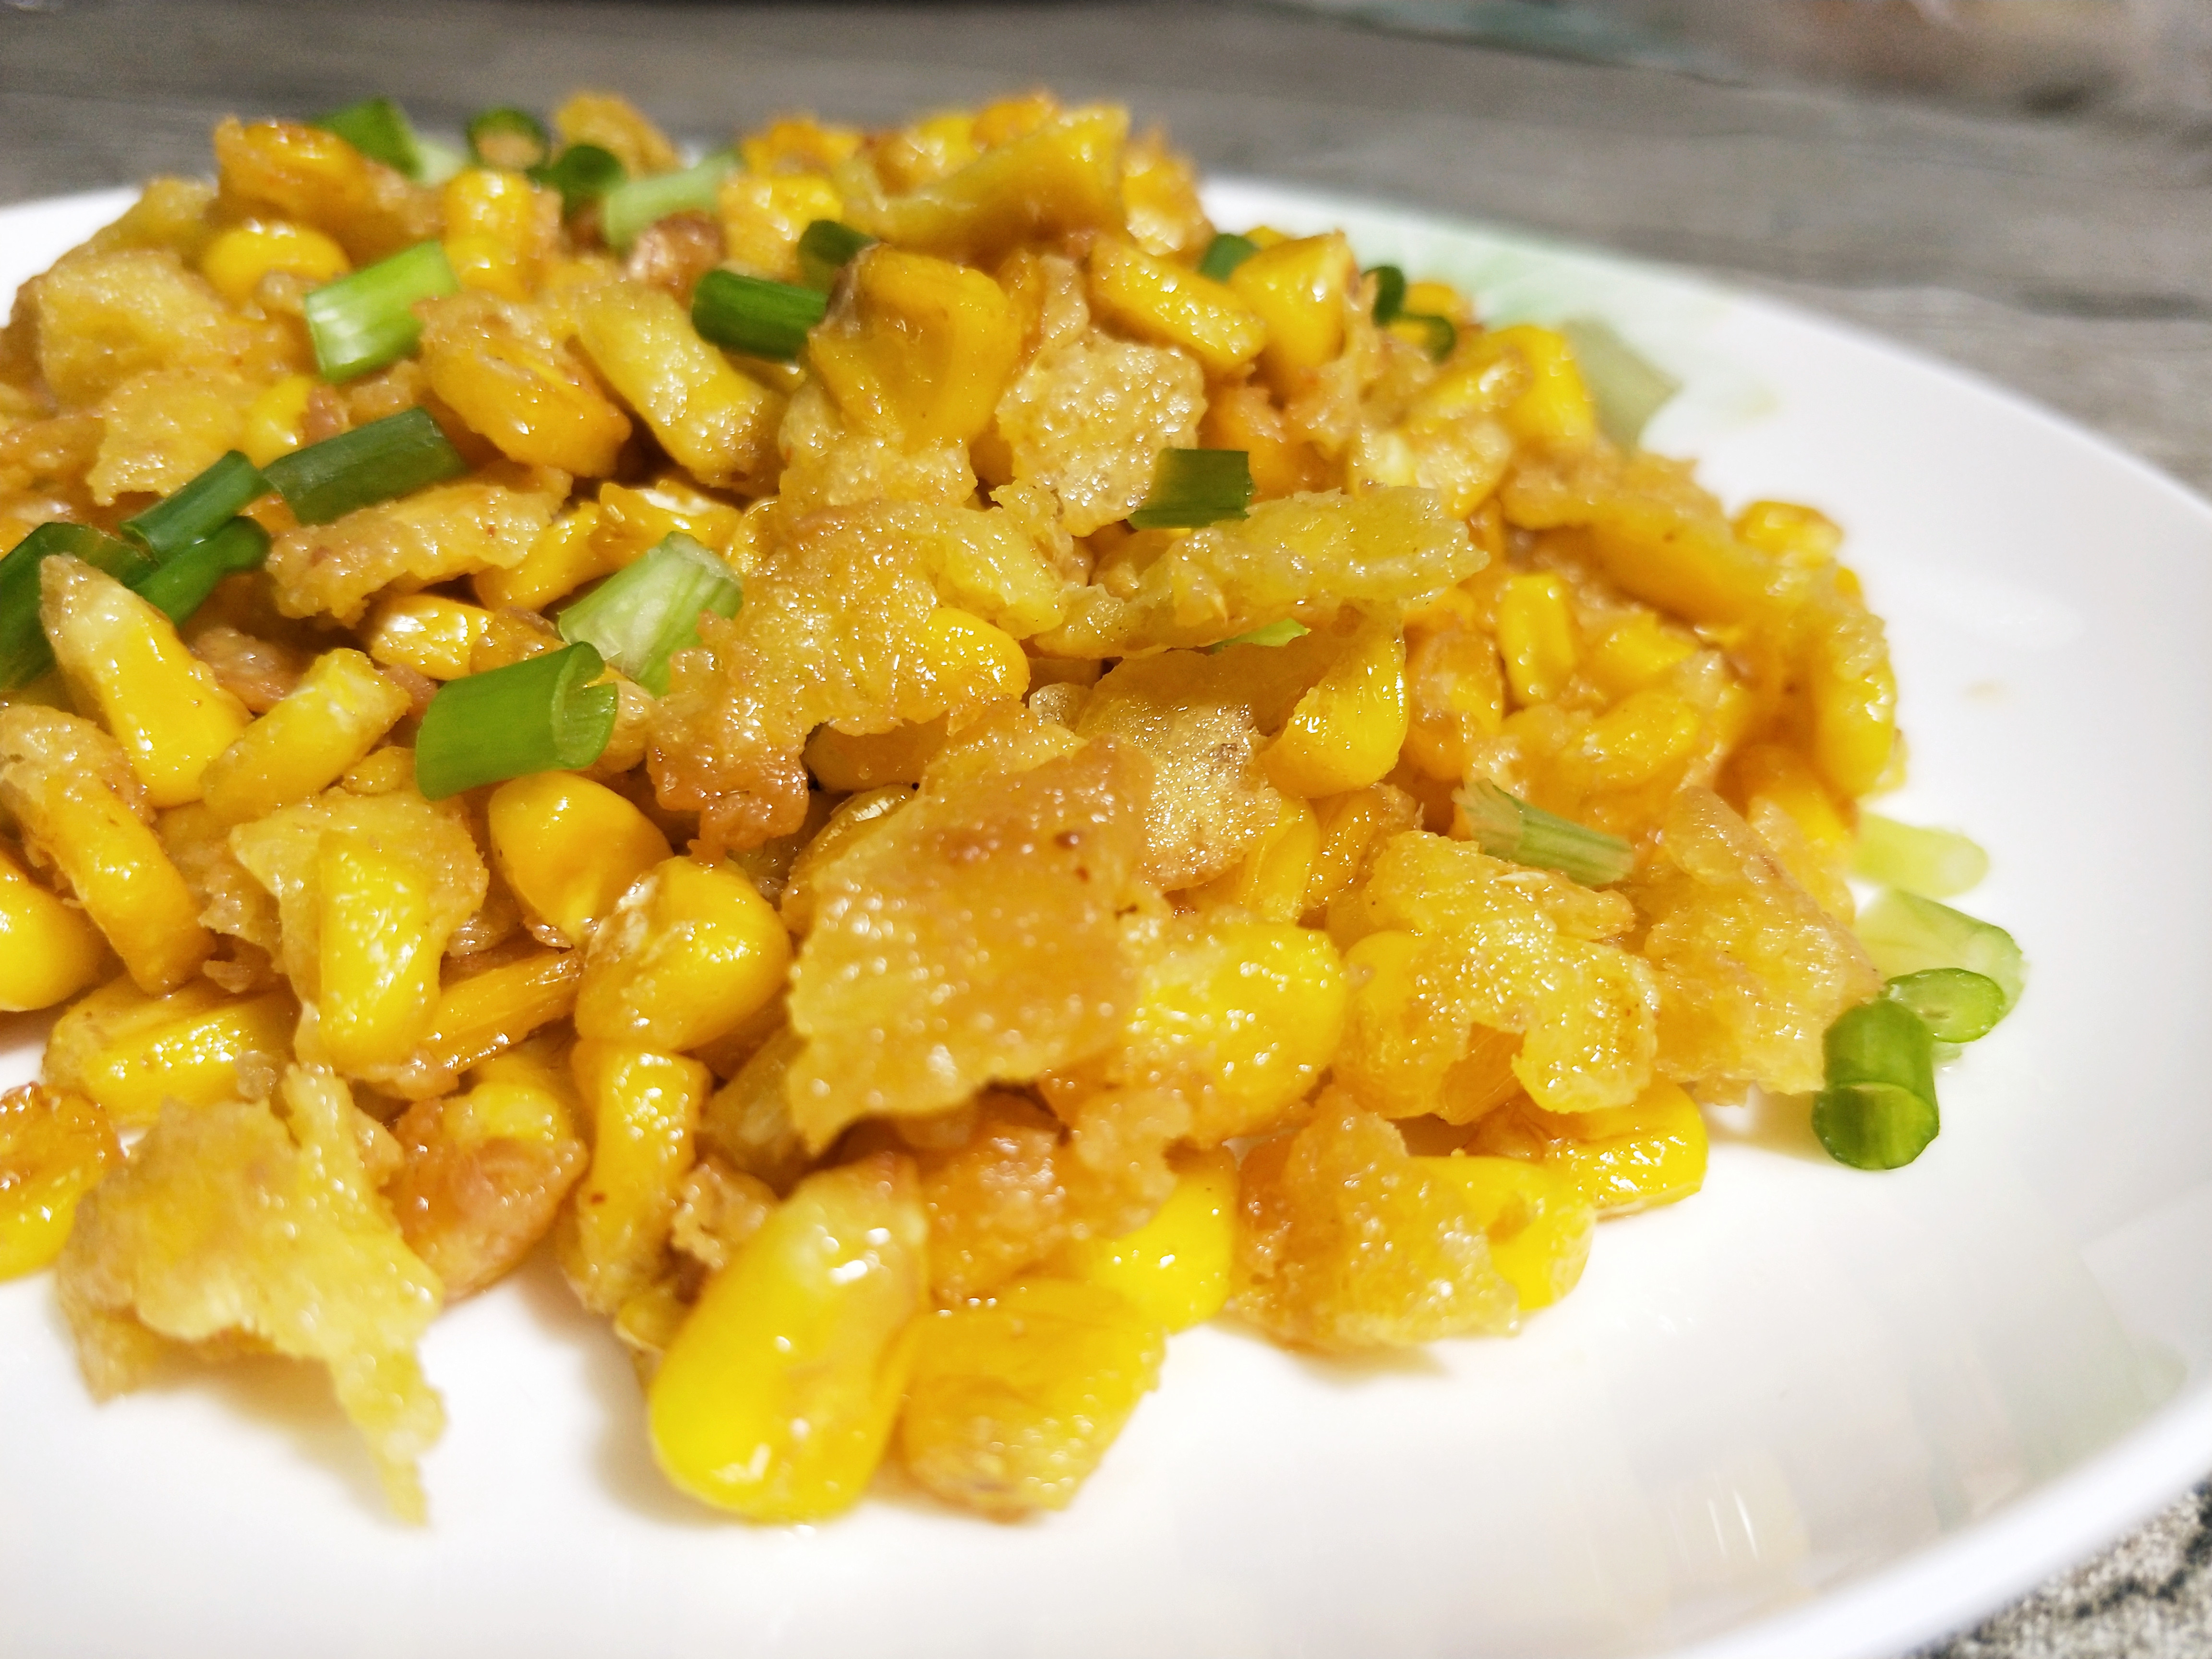 做一道简单的快手菜椒盐玉米粒酥脆椒香,小孩子最爱吃咯!